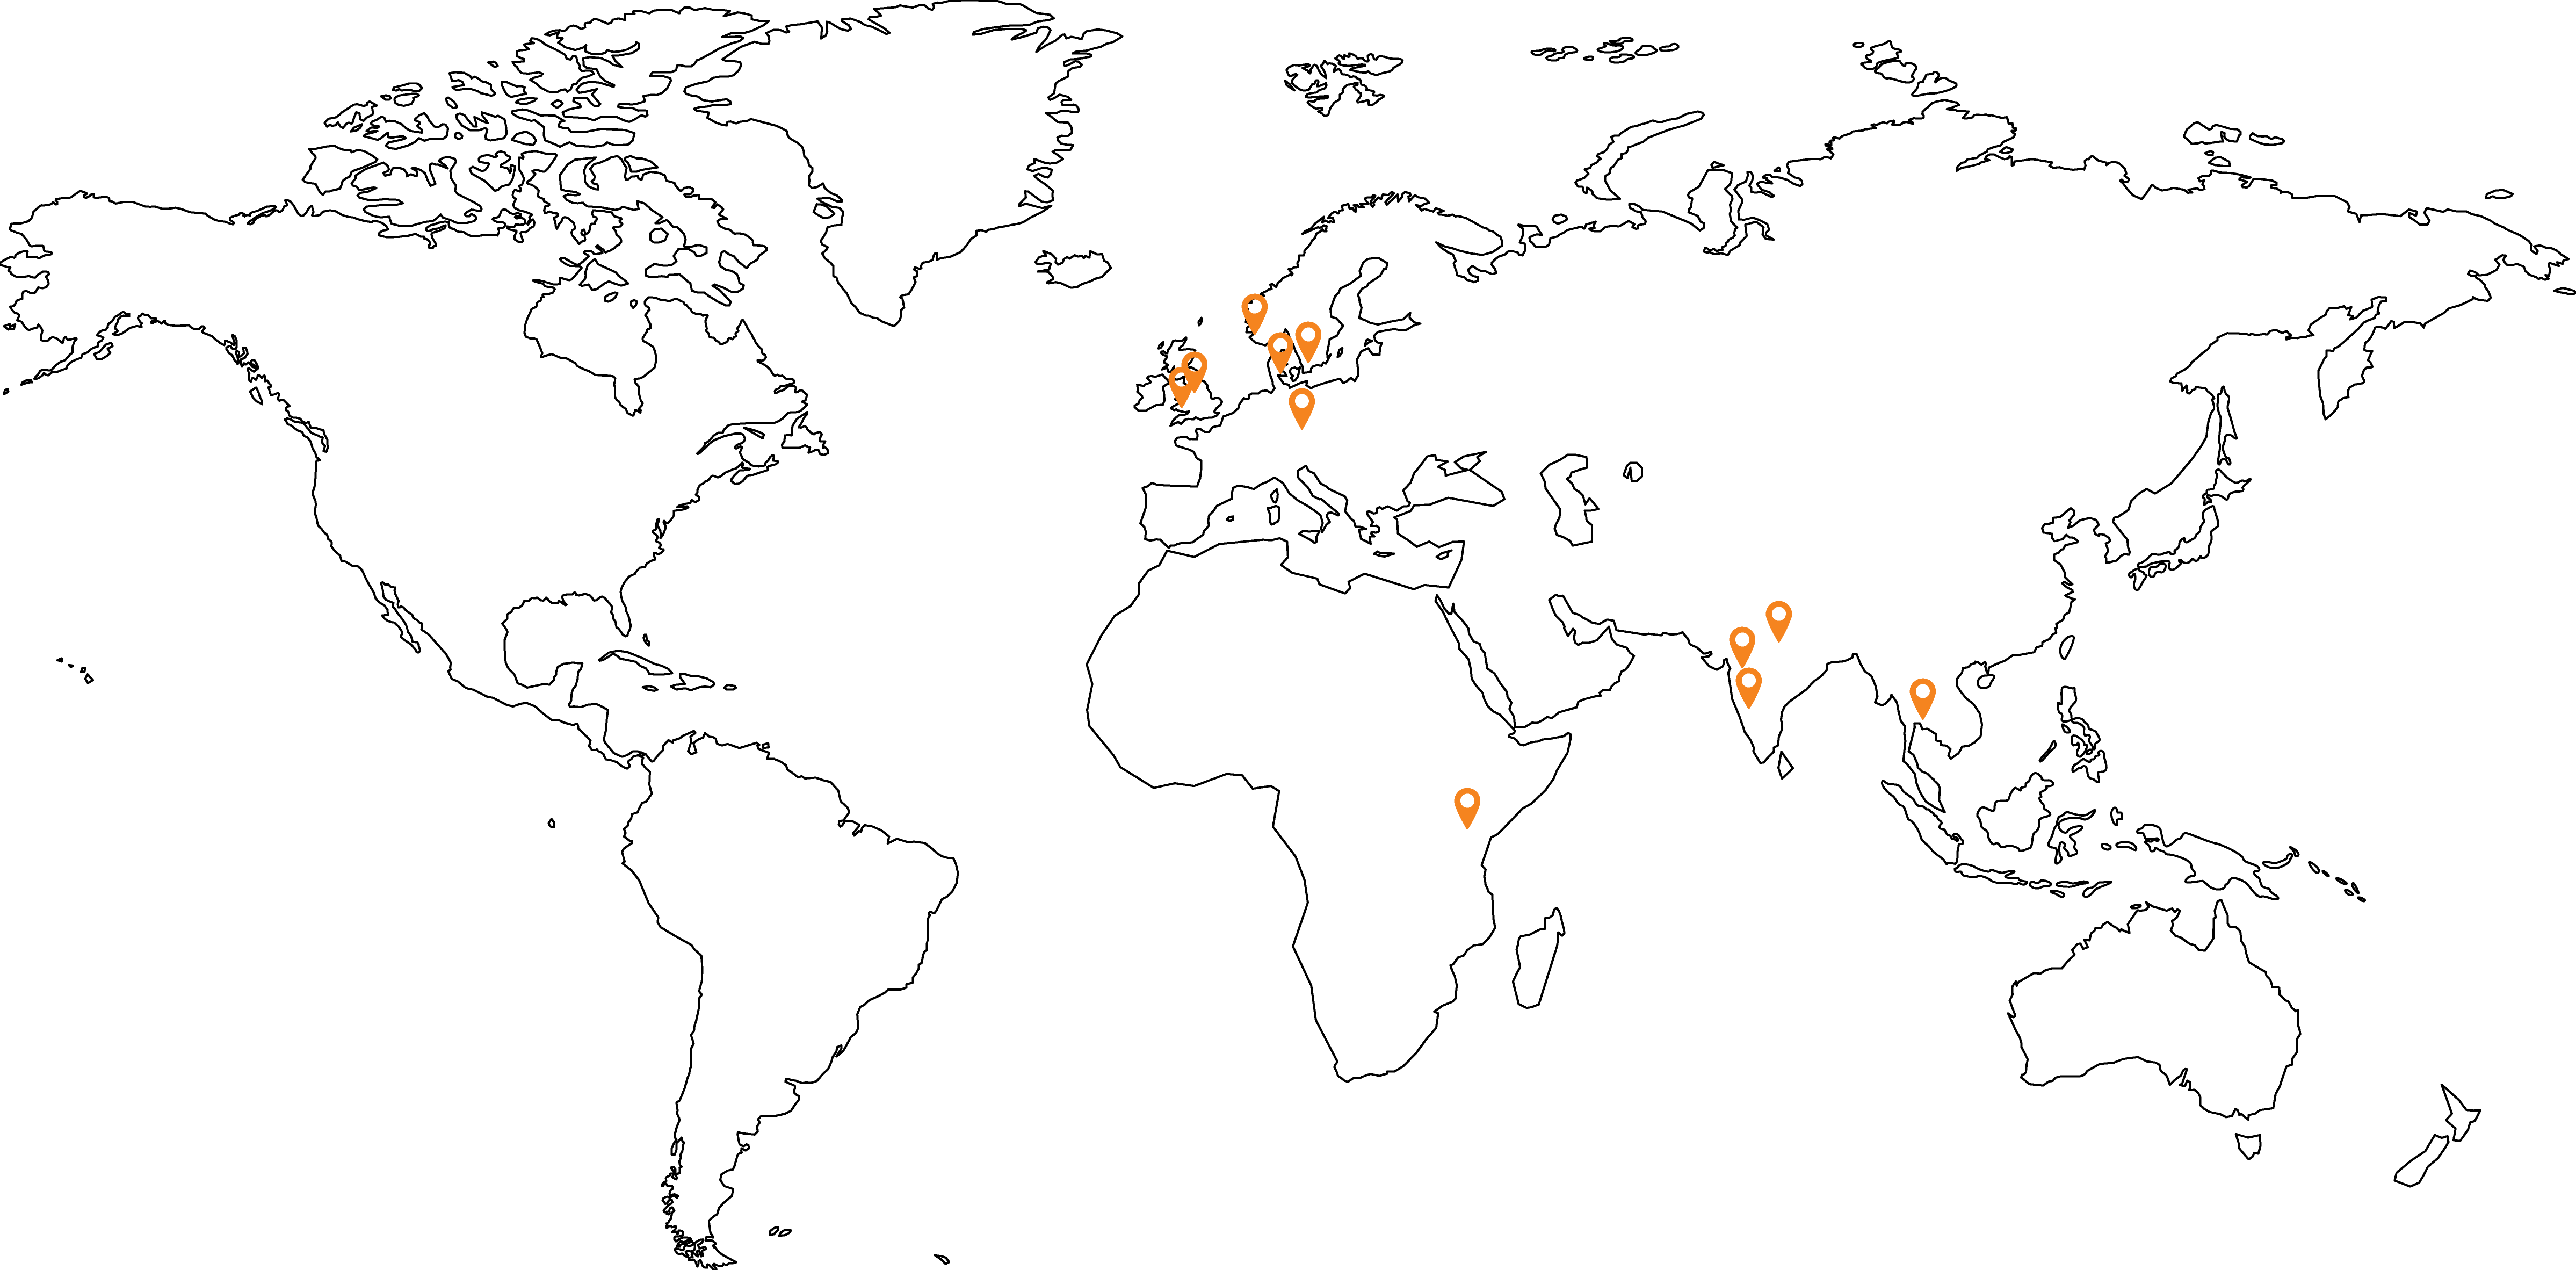 illustration skanem locations in world map